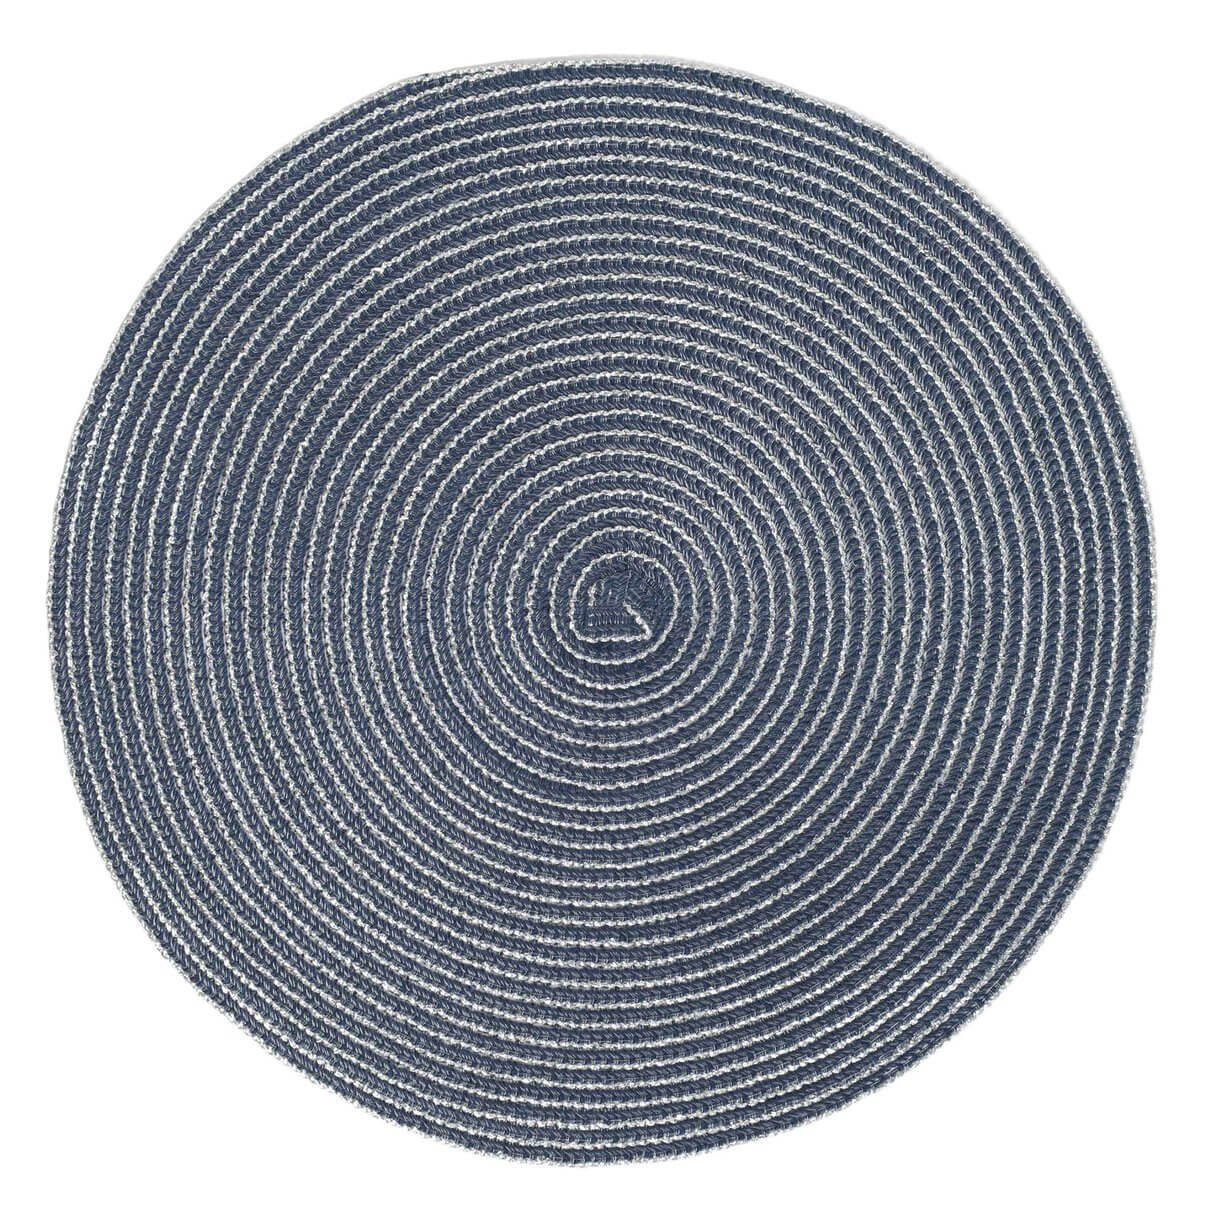 Салфетка под приборы, 38 см, полиэстер, круглая, темно-синяя, Rotary